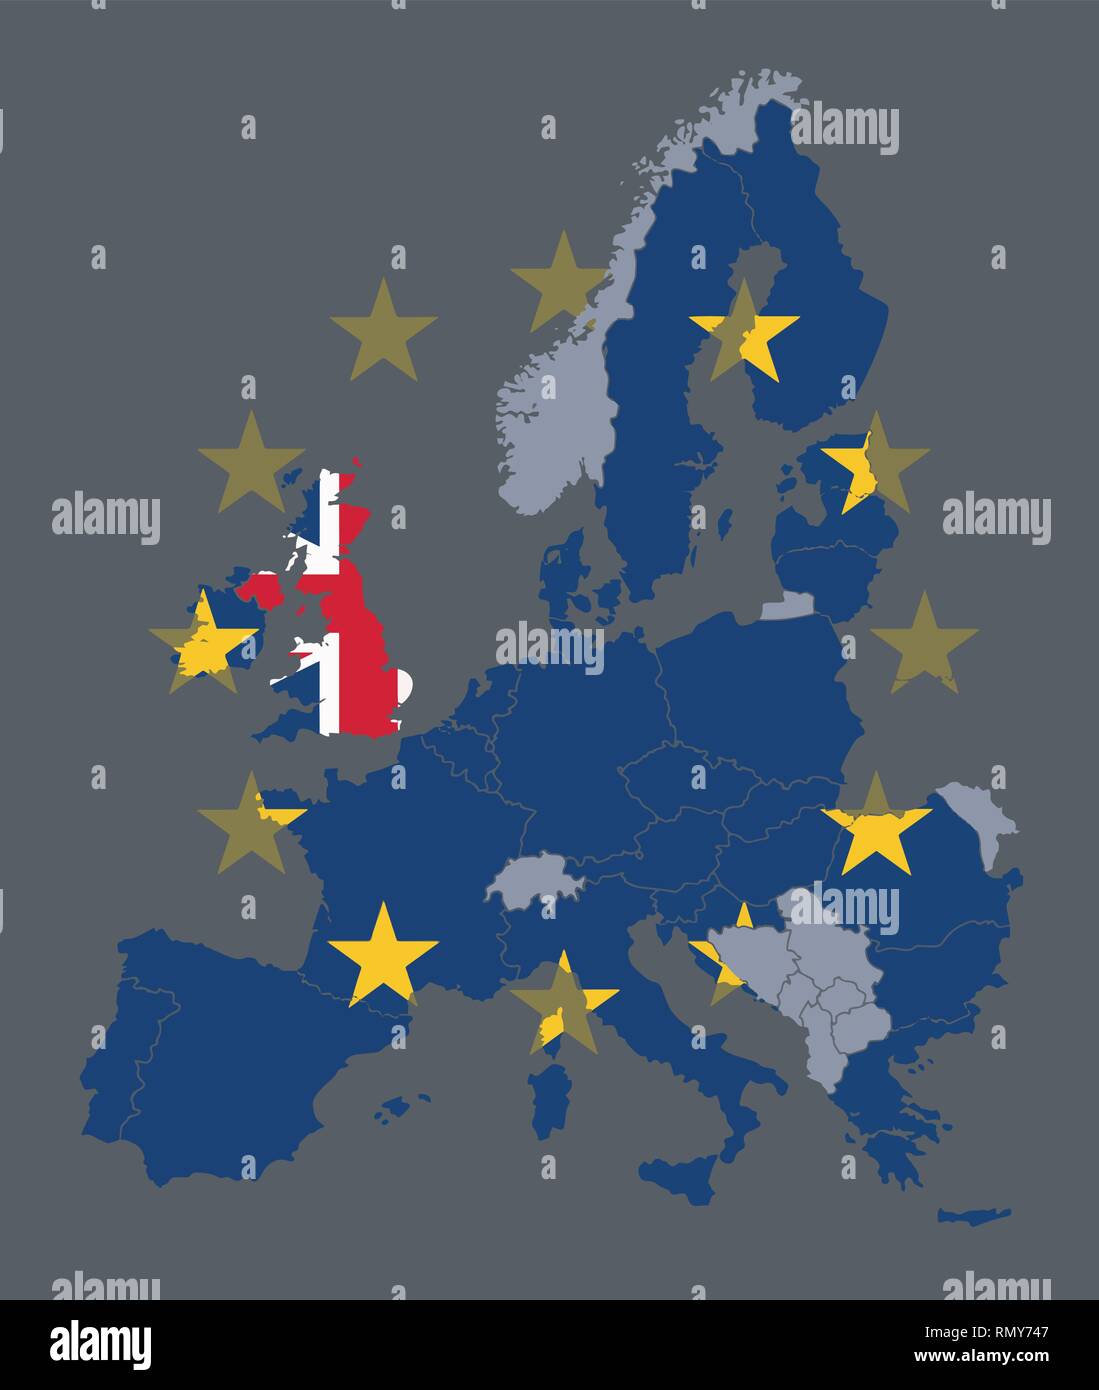 Carte vectorielle des états membres de l'UE avec drapeau de l'Union européenne et le Royaume-Uni l'objet avec pavillon britannique au cours de processus Brexit Illustration de Vecteur